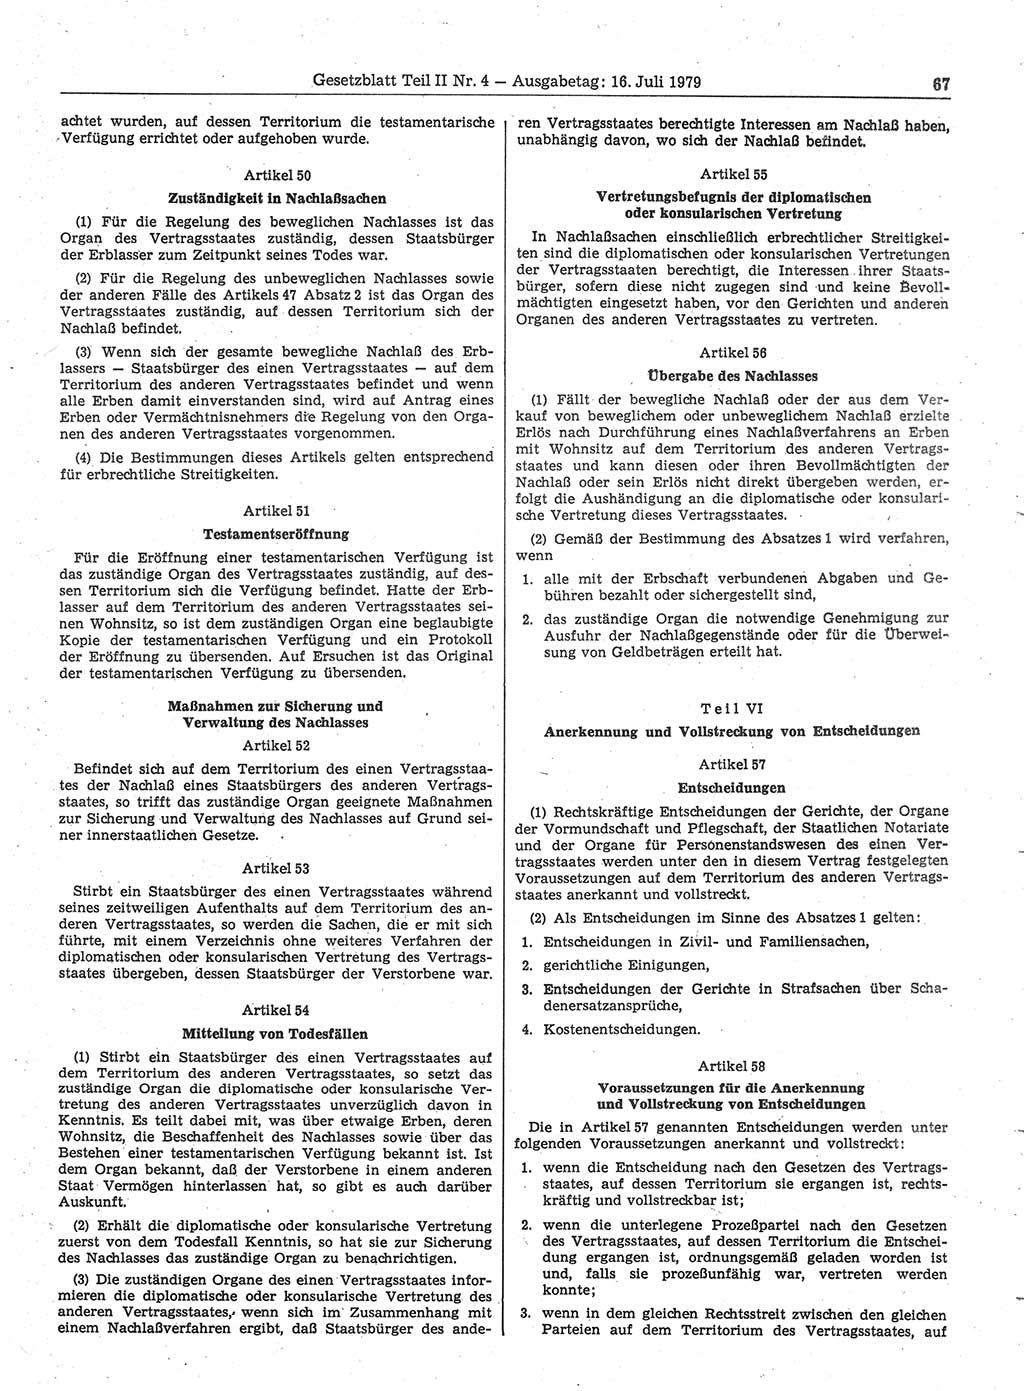 Gesetzblatt (GBl.) der Deutschen Demokratischen Republik (DDR) Teil ⅠⅠ 1979, Seite 67 (GBl. DDR ⅠⅠ 1979, S. 67)